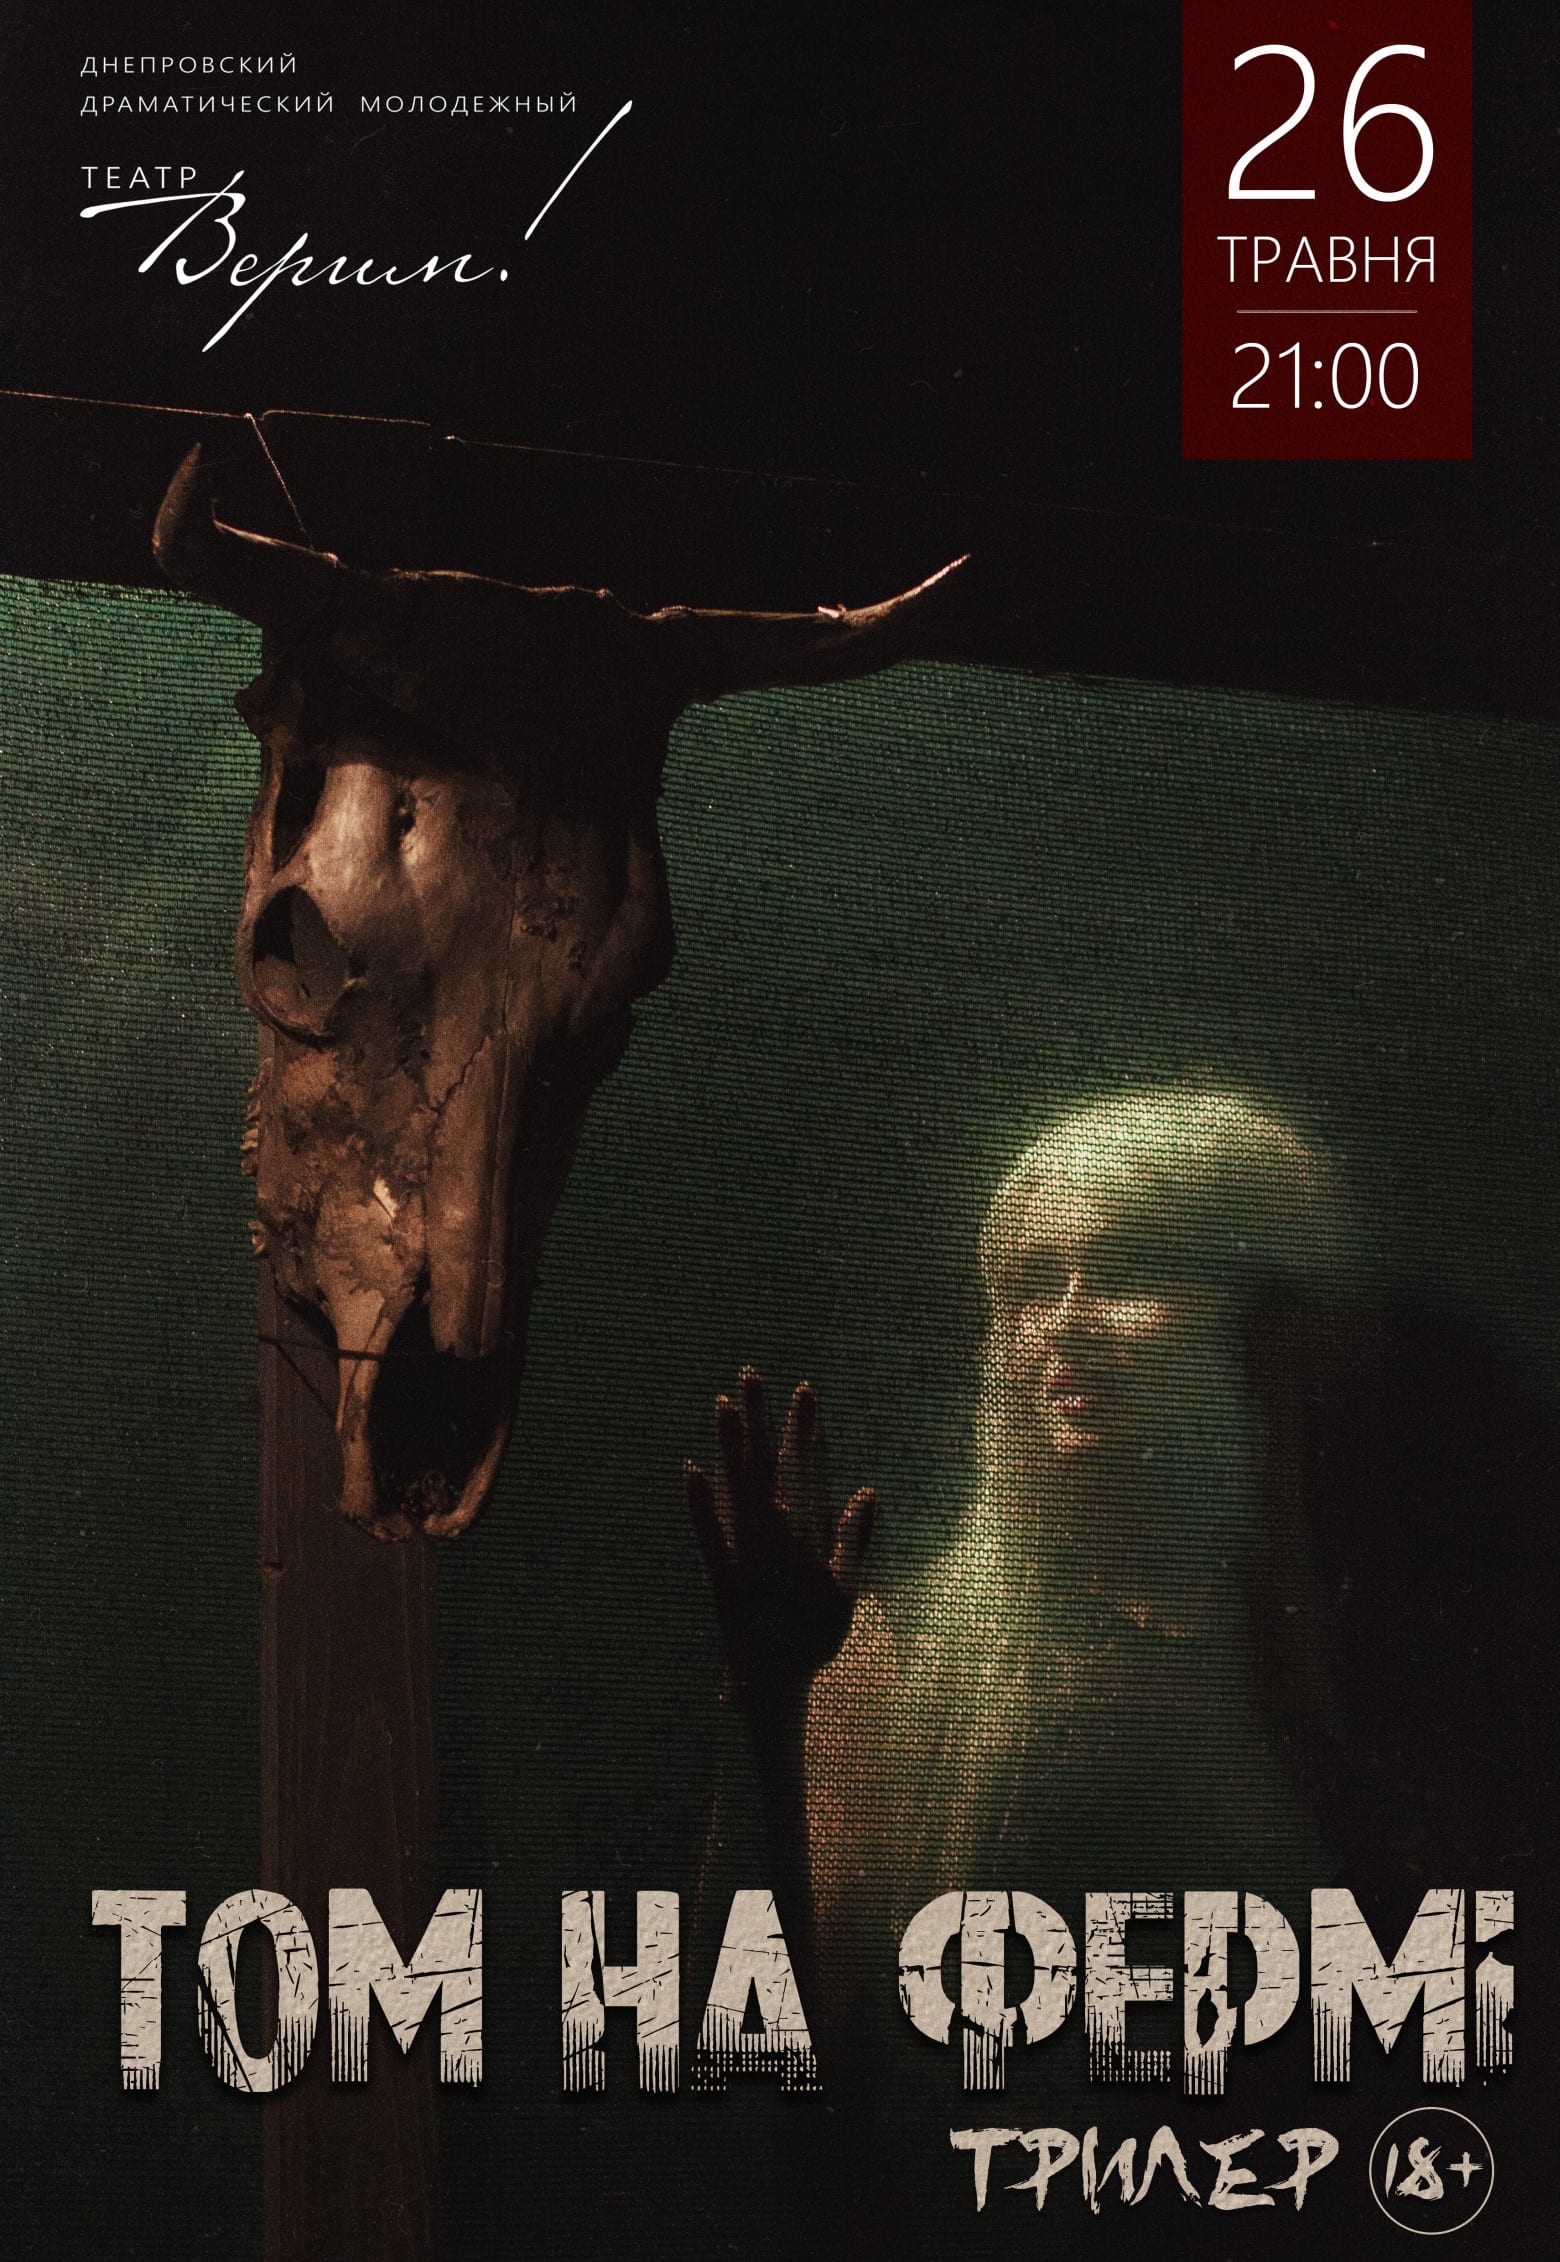 Театр Верим - Том на ферме Днепр, 01.06.2019, цена, купить билеты. Афиша Днепра